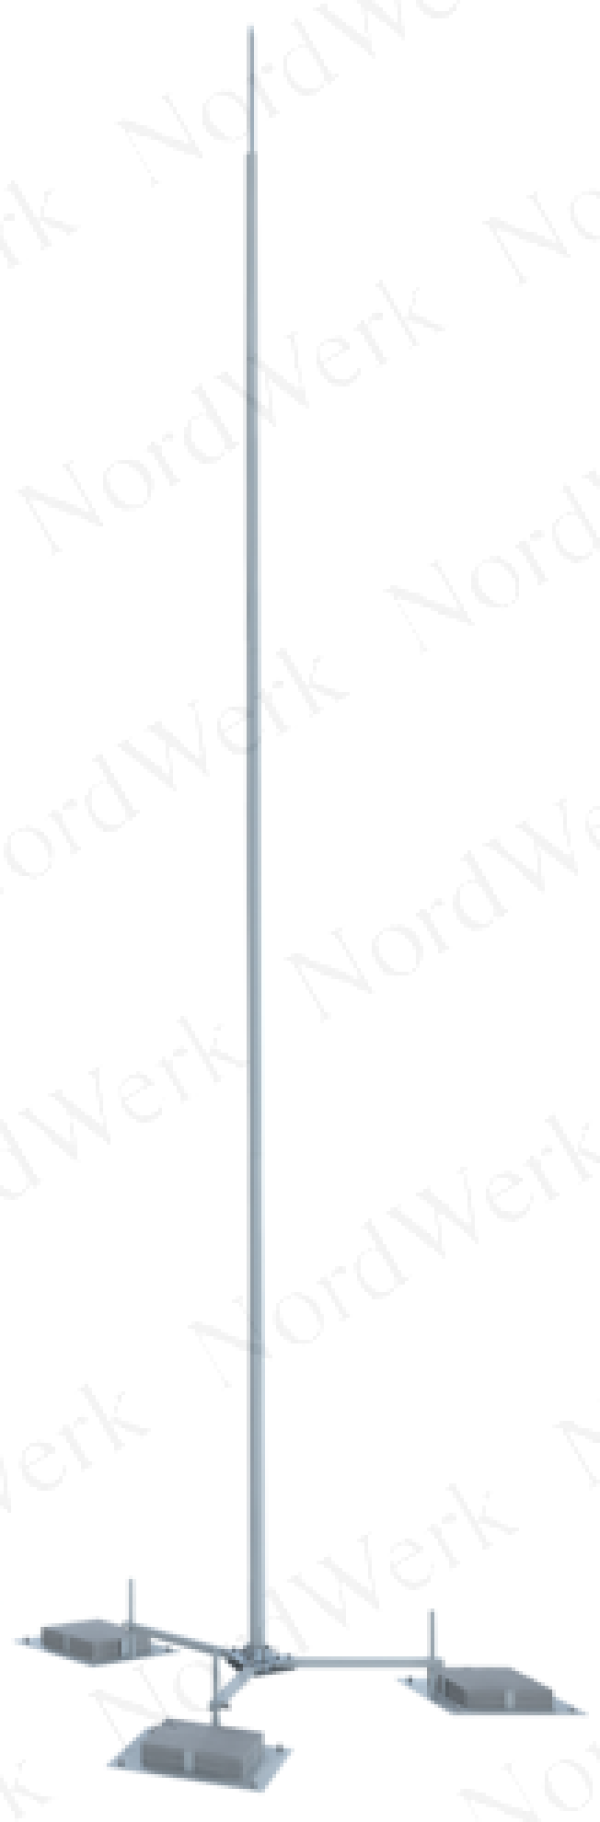 NordWerk МСАА-М-1,8-П – Молниеотвод высотой 1,8 метров для активных молниеприемников (алюминий; с основанием под плитку)